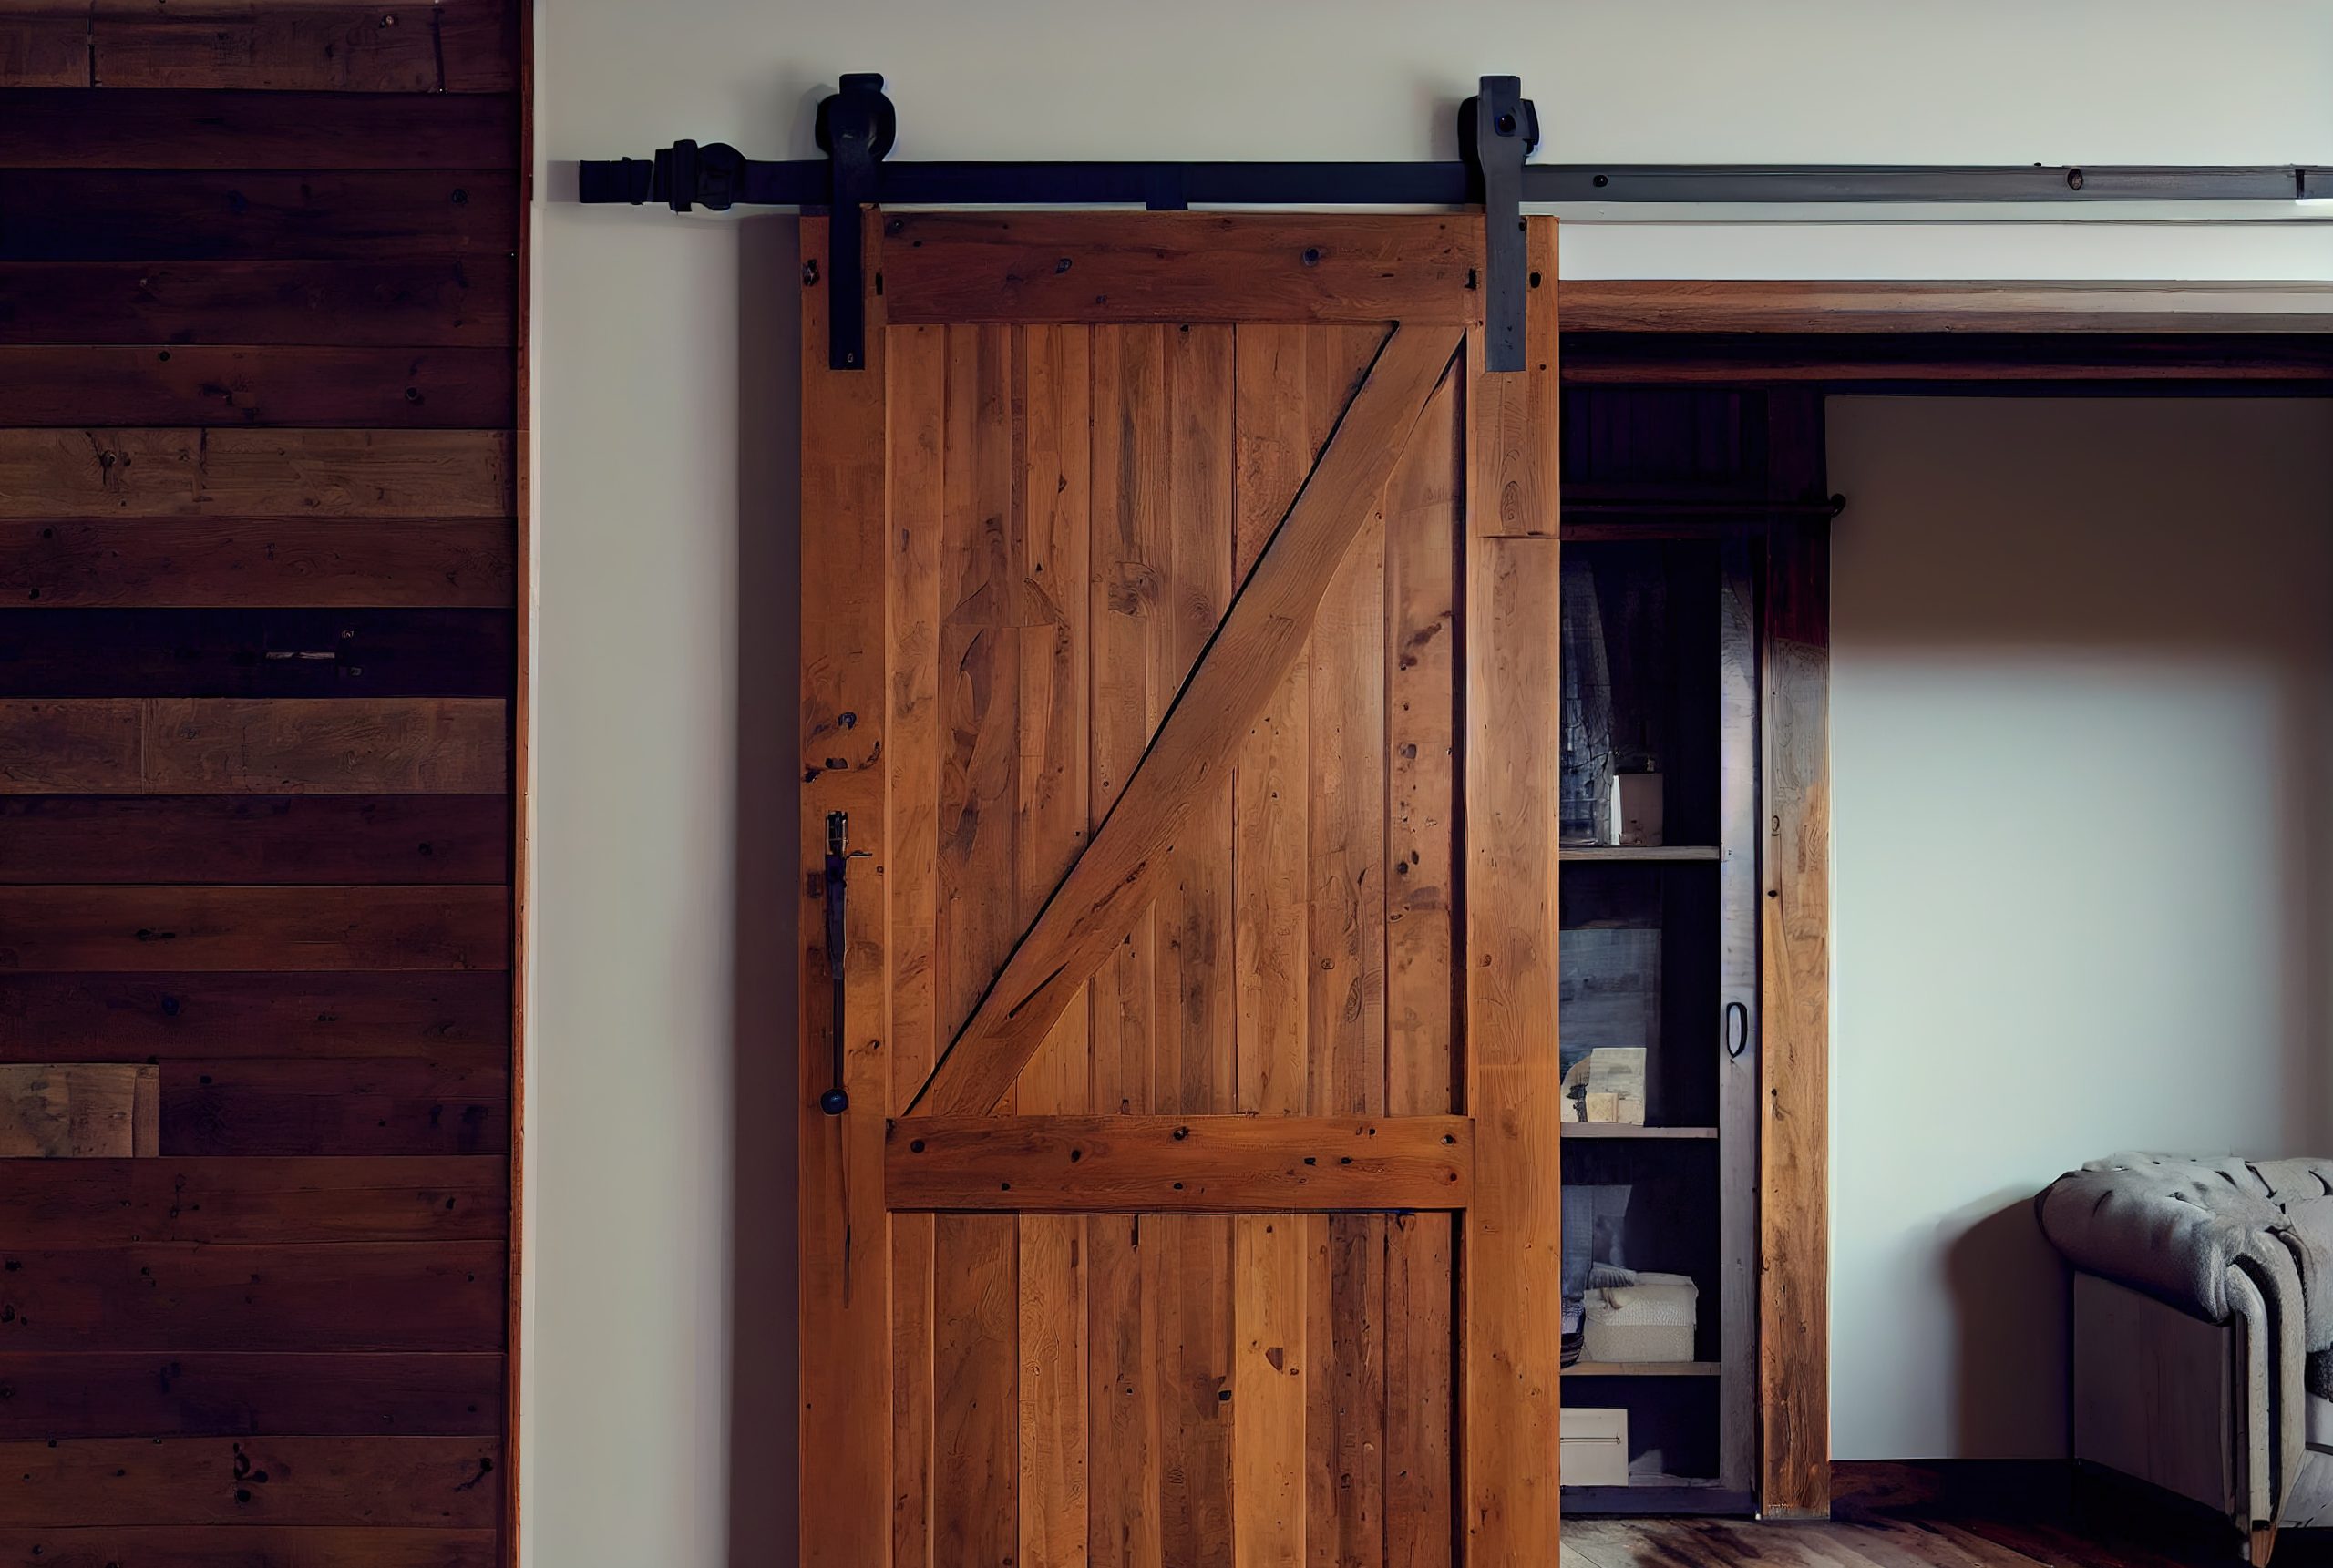 Dark wooden barn door for interior space